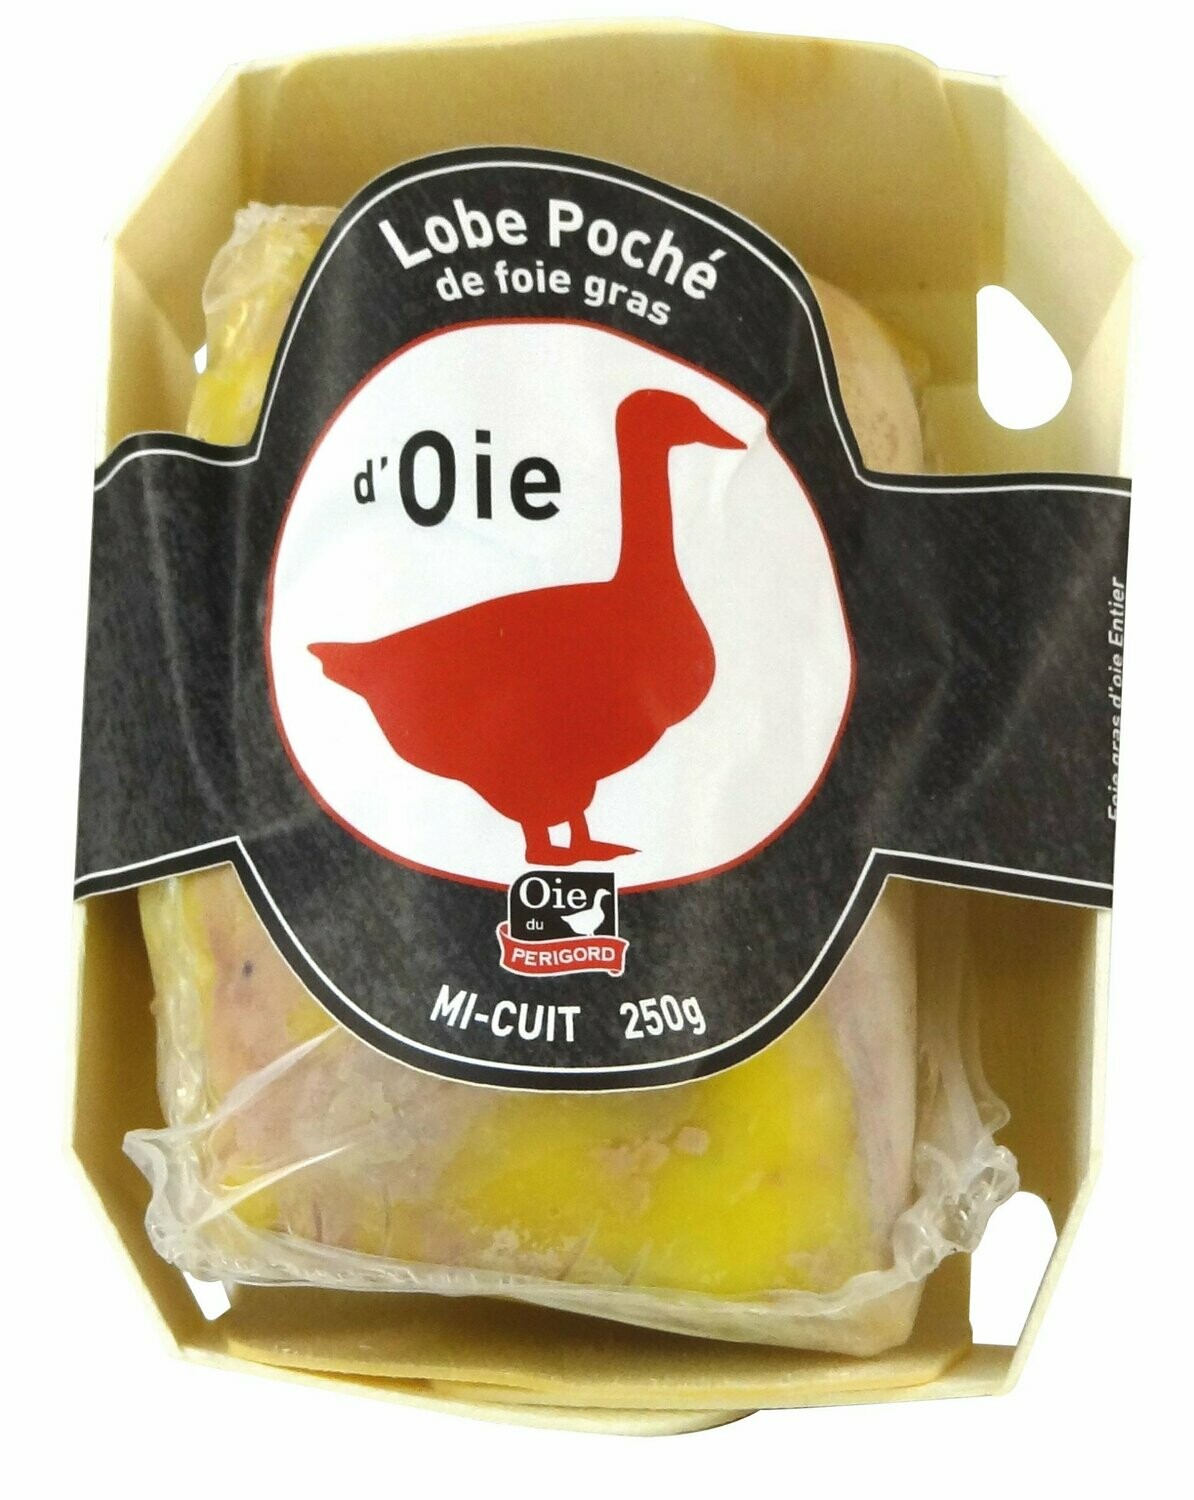 Lobe de foie gras d'oie cru du Périgord